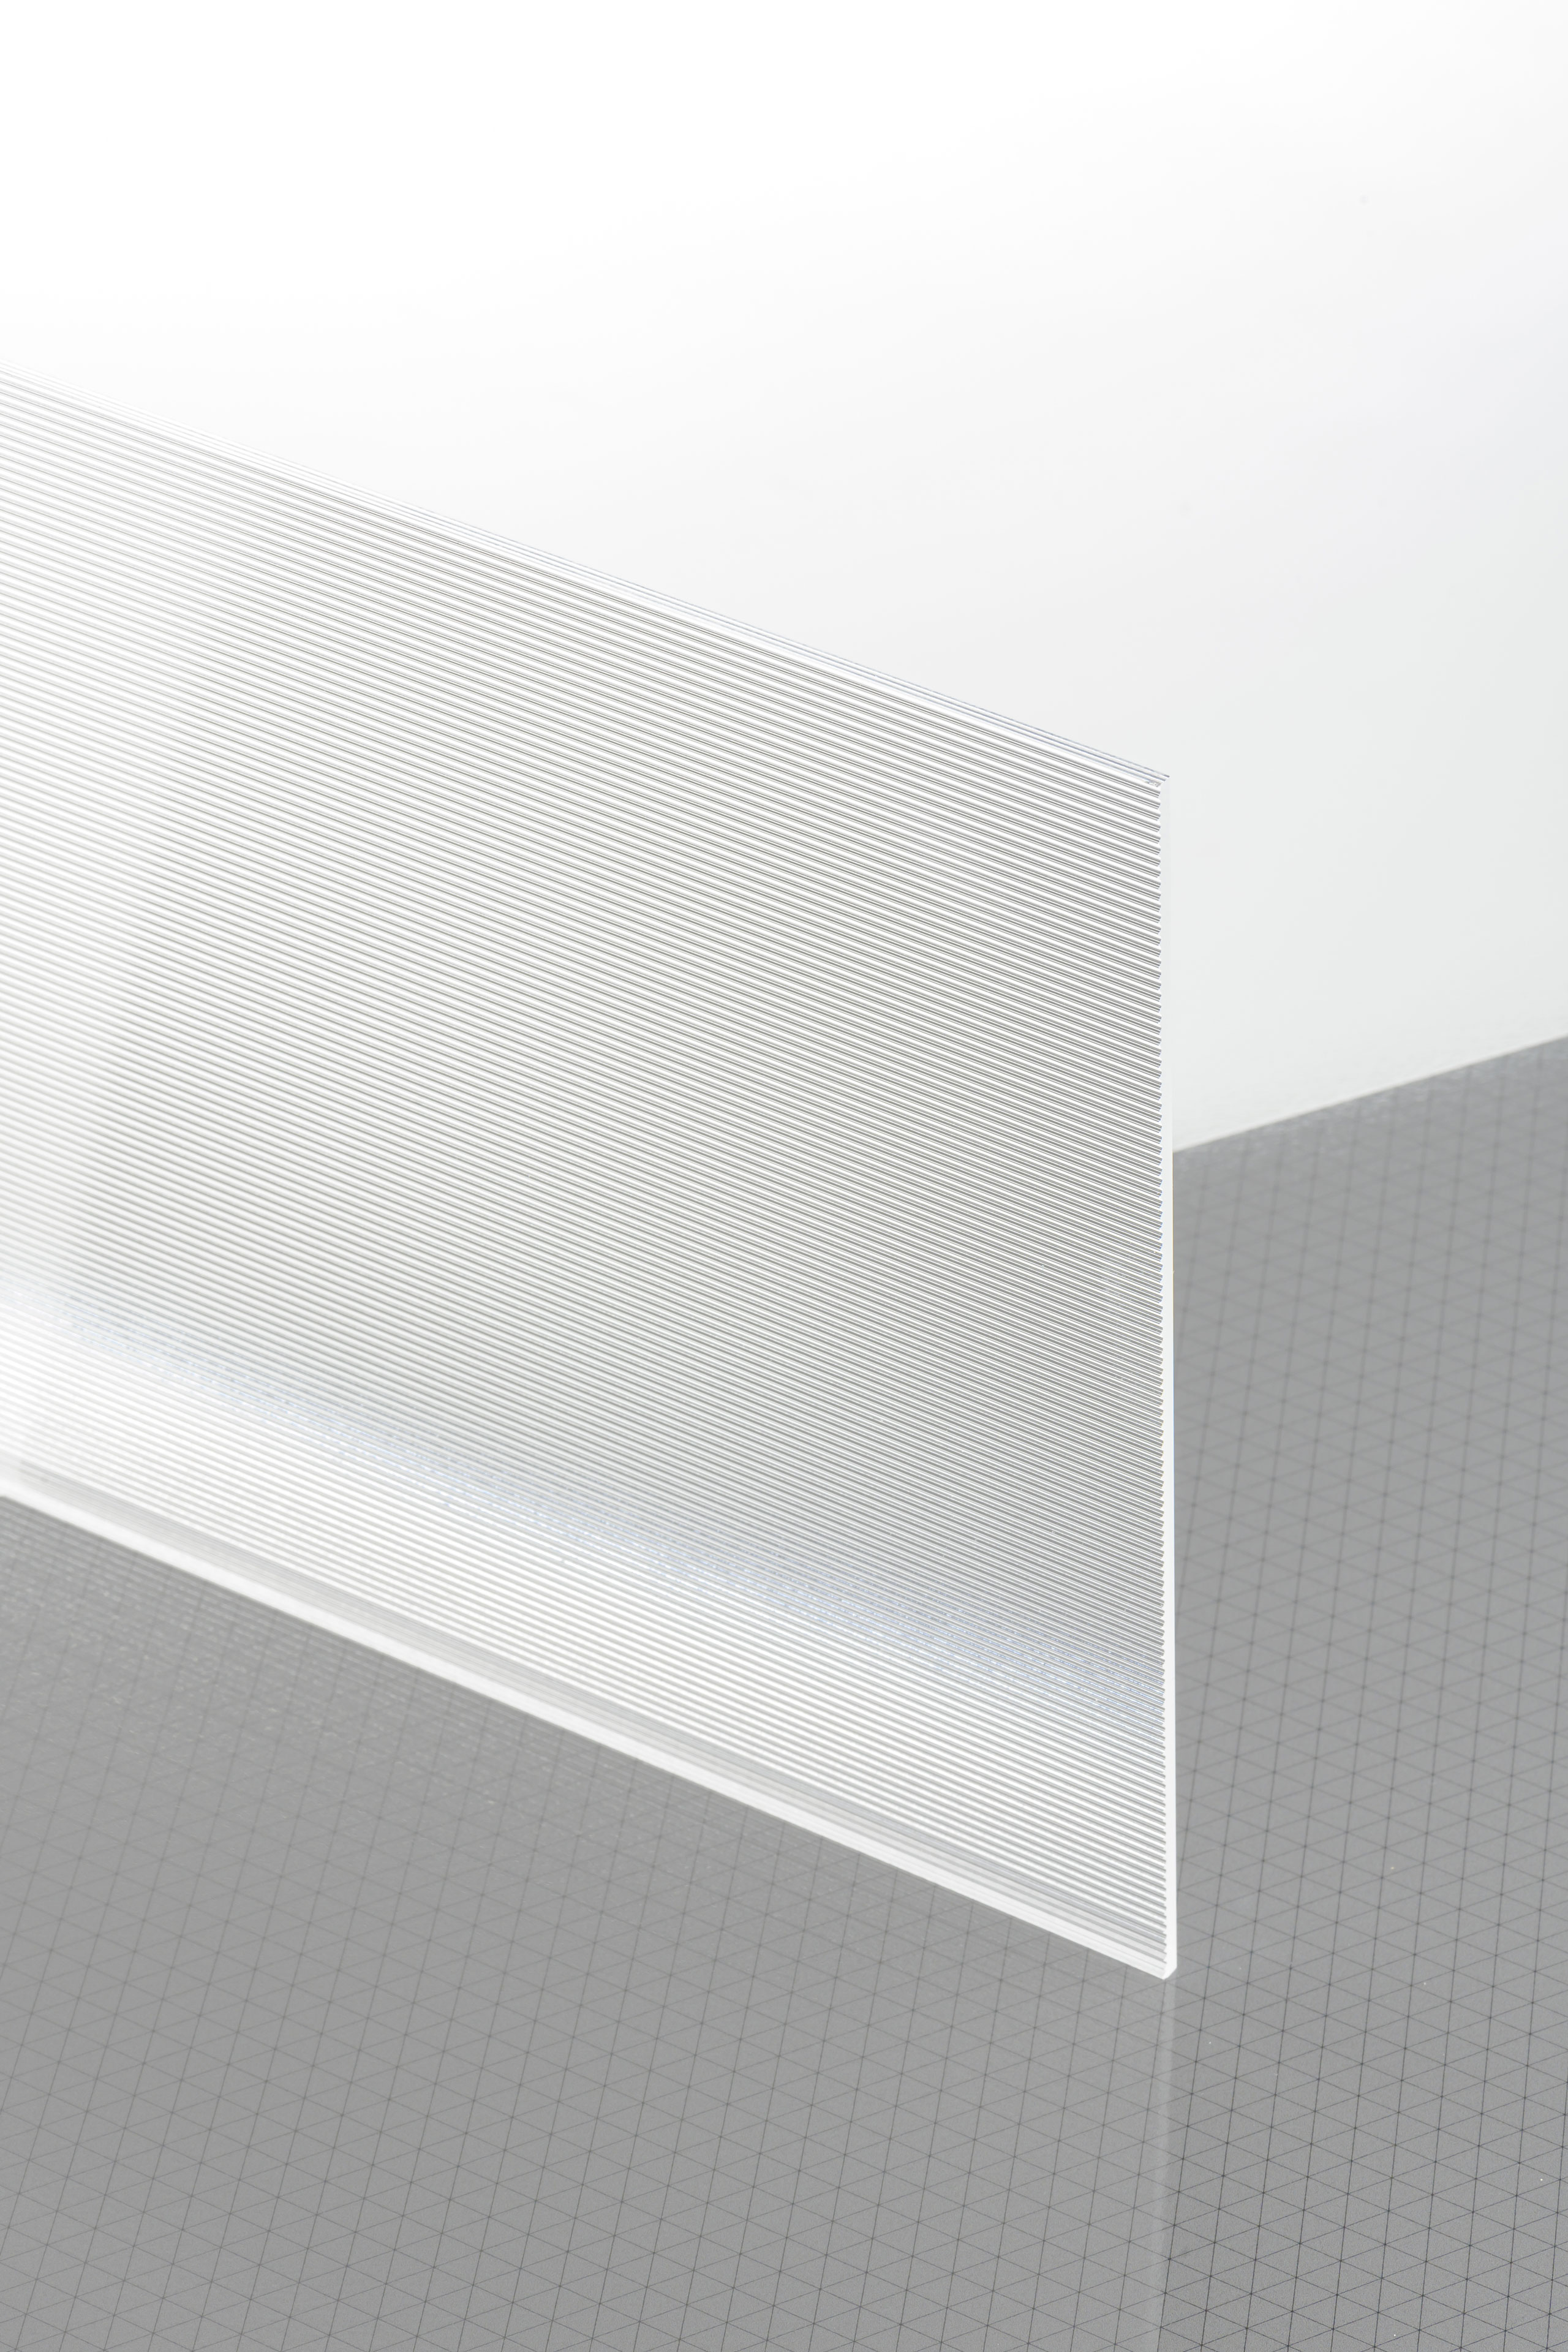 Plaques d'Acrylique, de Plexiglass ou de Polycarbonate… de quoi